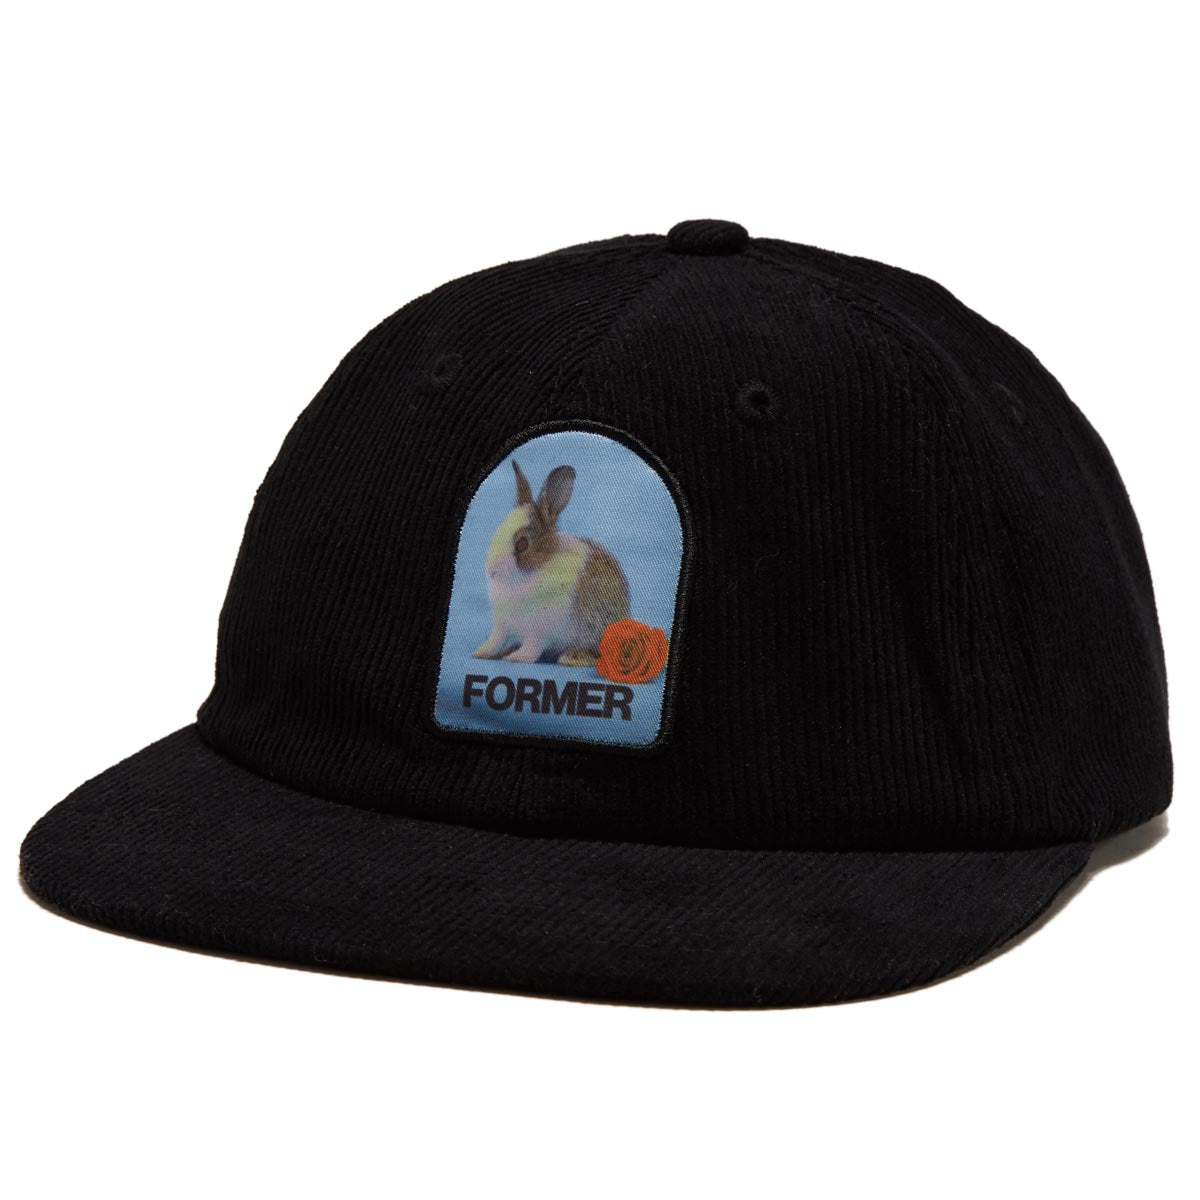 Former Valentine Cord Hat - Black image 1